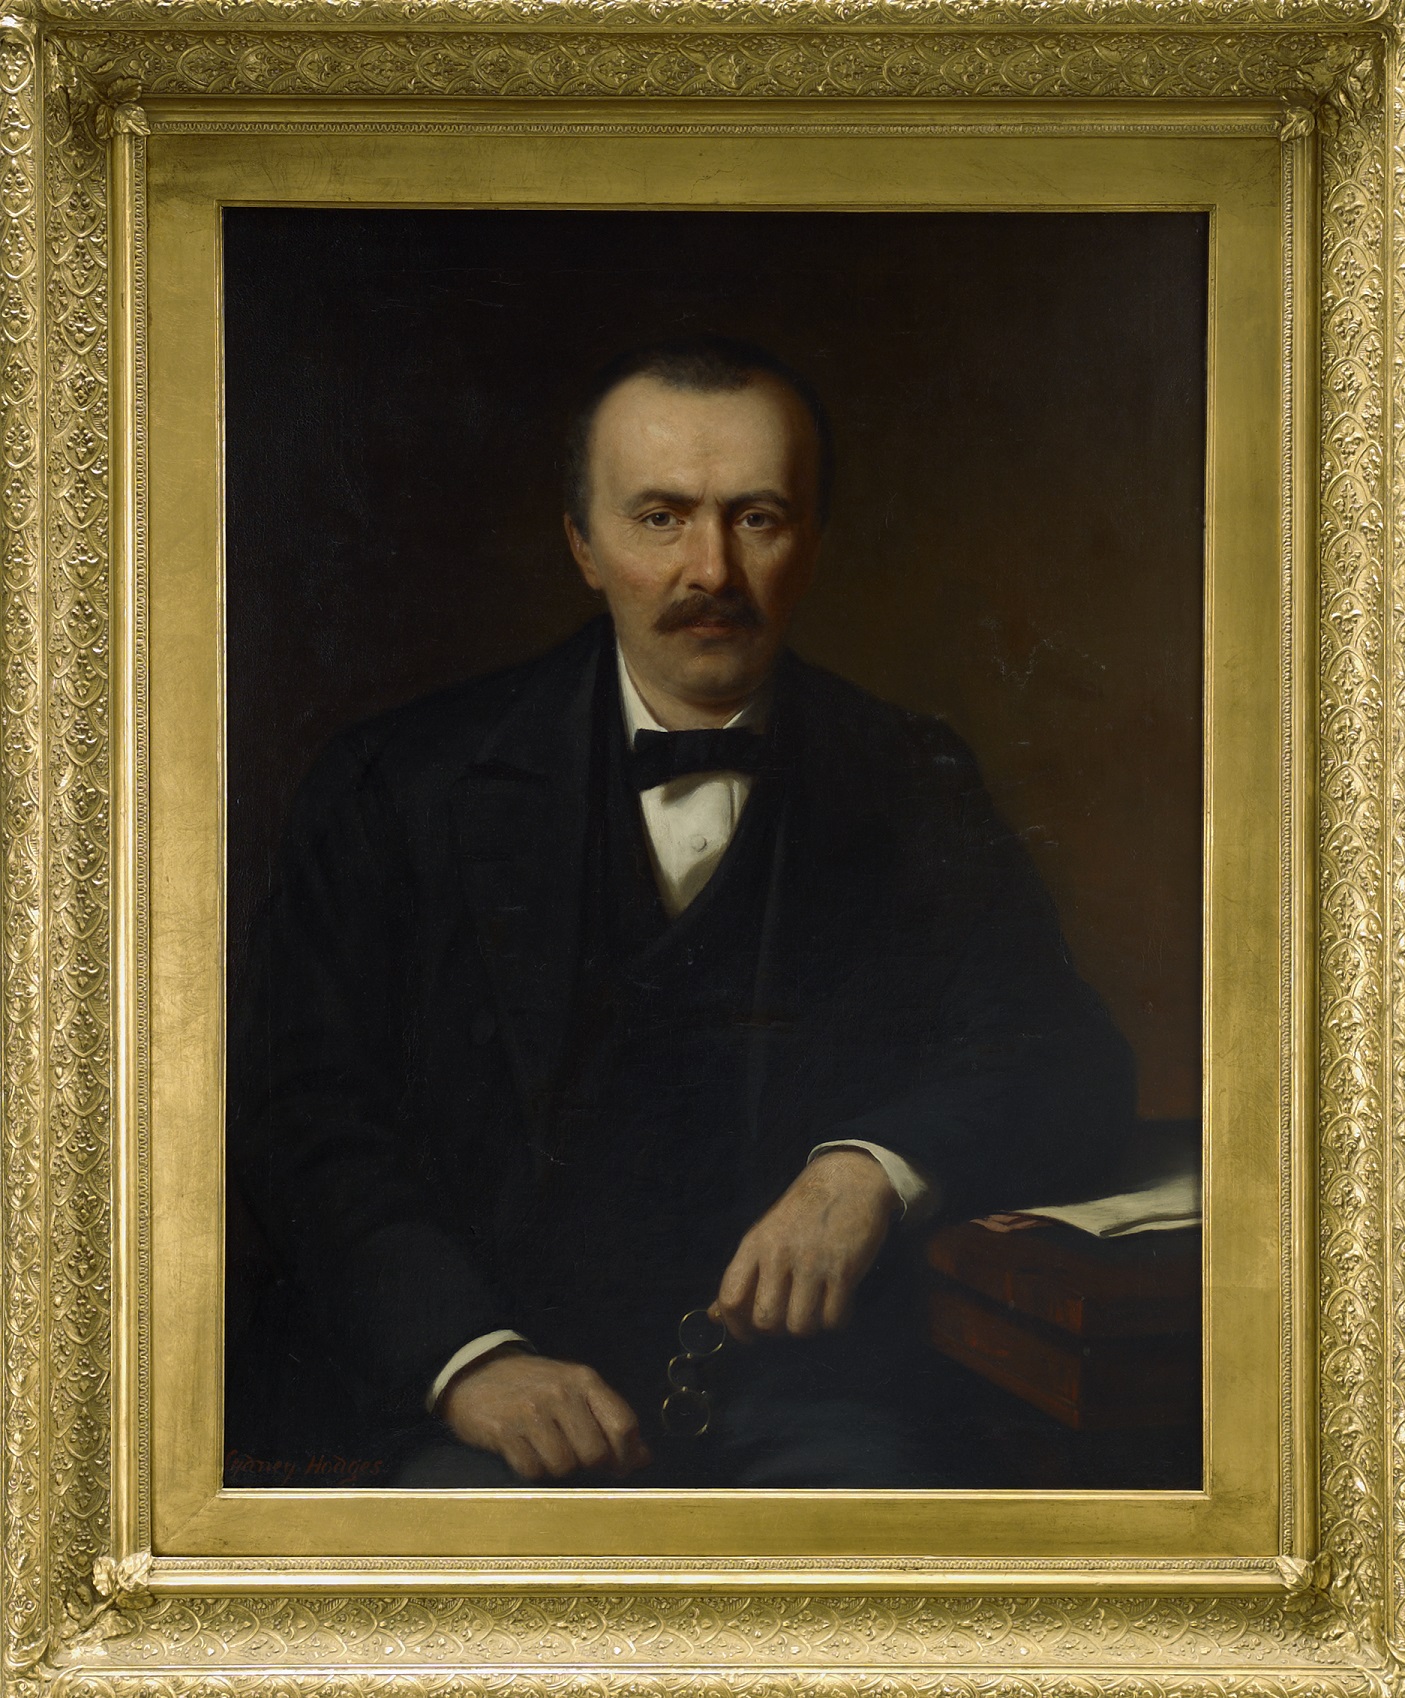 Portrait of Henrich Schliemann